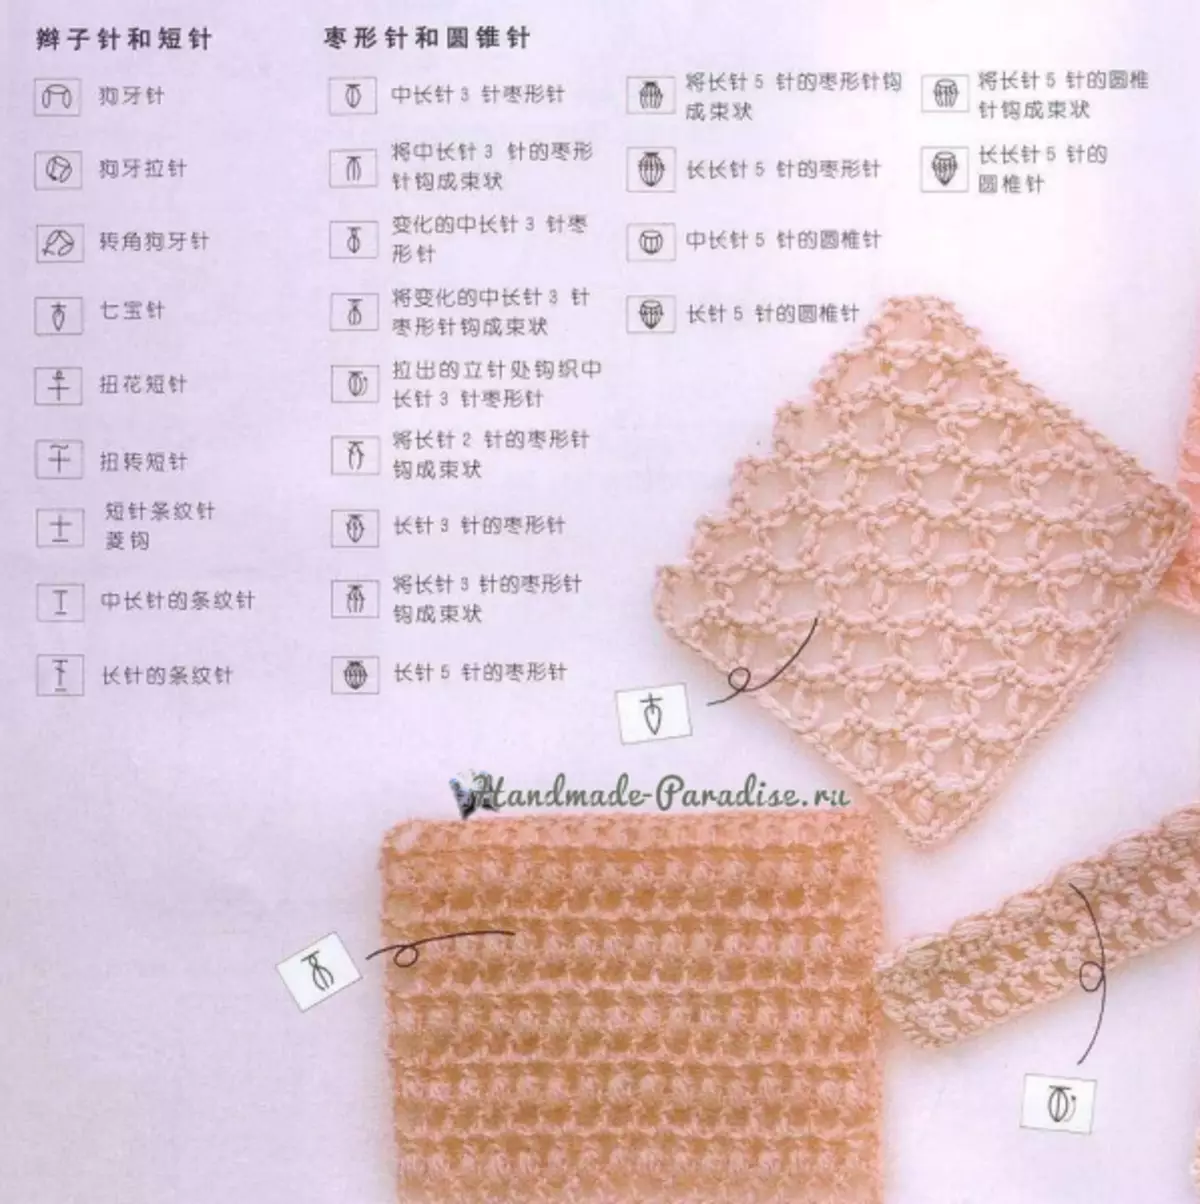 တရုတ်အစီအစဉ်များအတွက် crochet ဘယ်လို